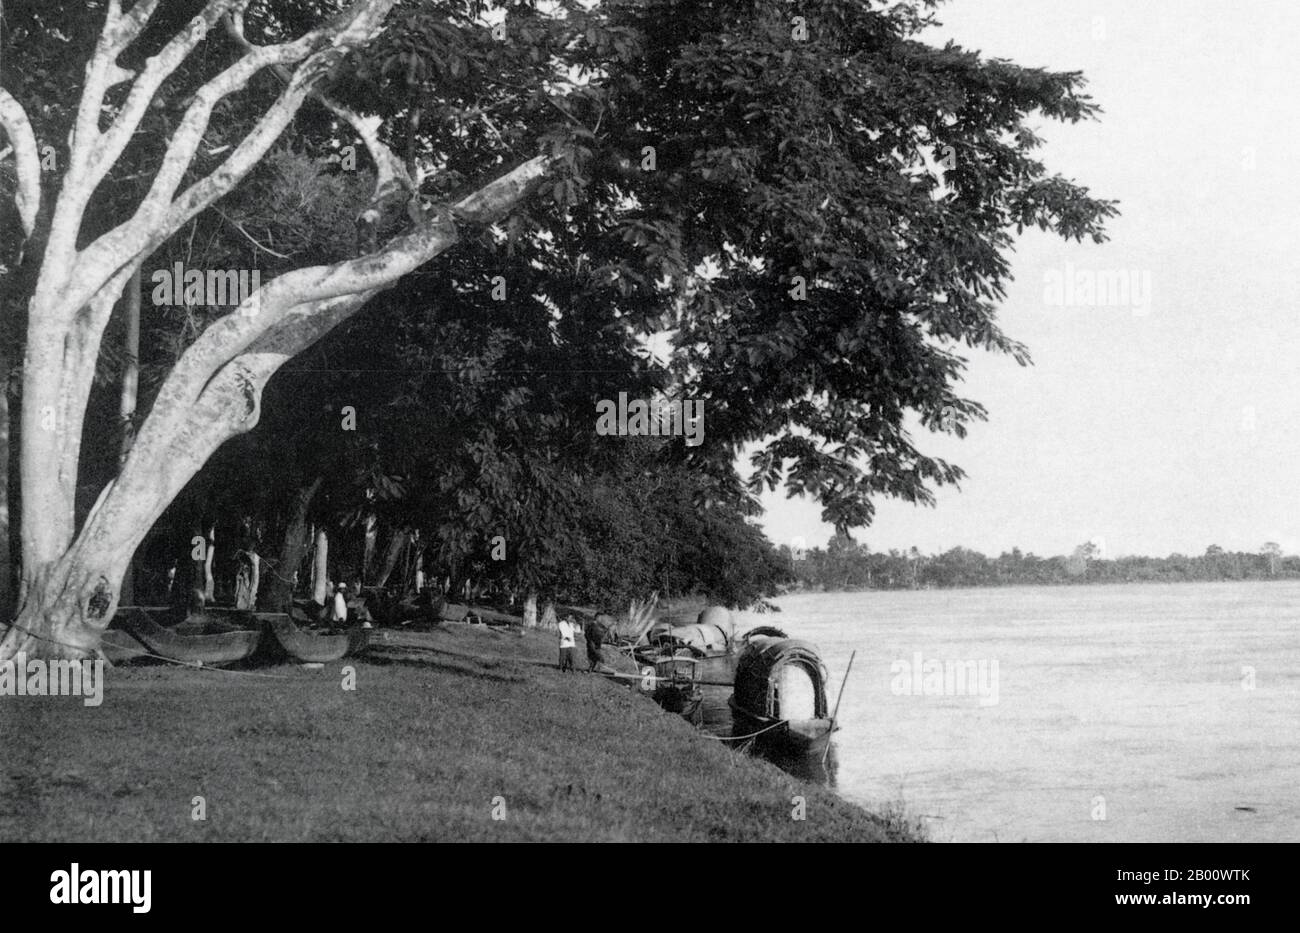 Laos: Ein Lastkahn, der 1901 am Ufer in Vientiane festgemacht wurde. Vientiane, früher Sri Sattanak, wurde 1827 von siamesischen Armeen zu Boden gerissen und geplündert. Die Stadt wurde in schweren Verfall und überwuchert und fast unbevölkert, bis die Französisch Kolonisten kamen und übernahm die Region im Jahr 1893. Vientiane wurde die Hauptstadt des französischen Protektorats von Laos im Jahr 1899 und wurde mit renovierten buddhistischen Tempeln von französischer Architektur umgeben wieder aufgebaut. Vientiane blieb bis 1949 ‘Chefkoch-lieu der französischen Hauptstadt Laos. Stockfoto